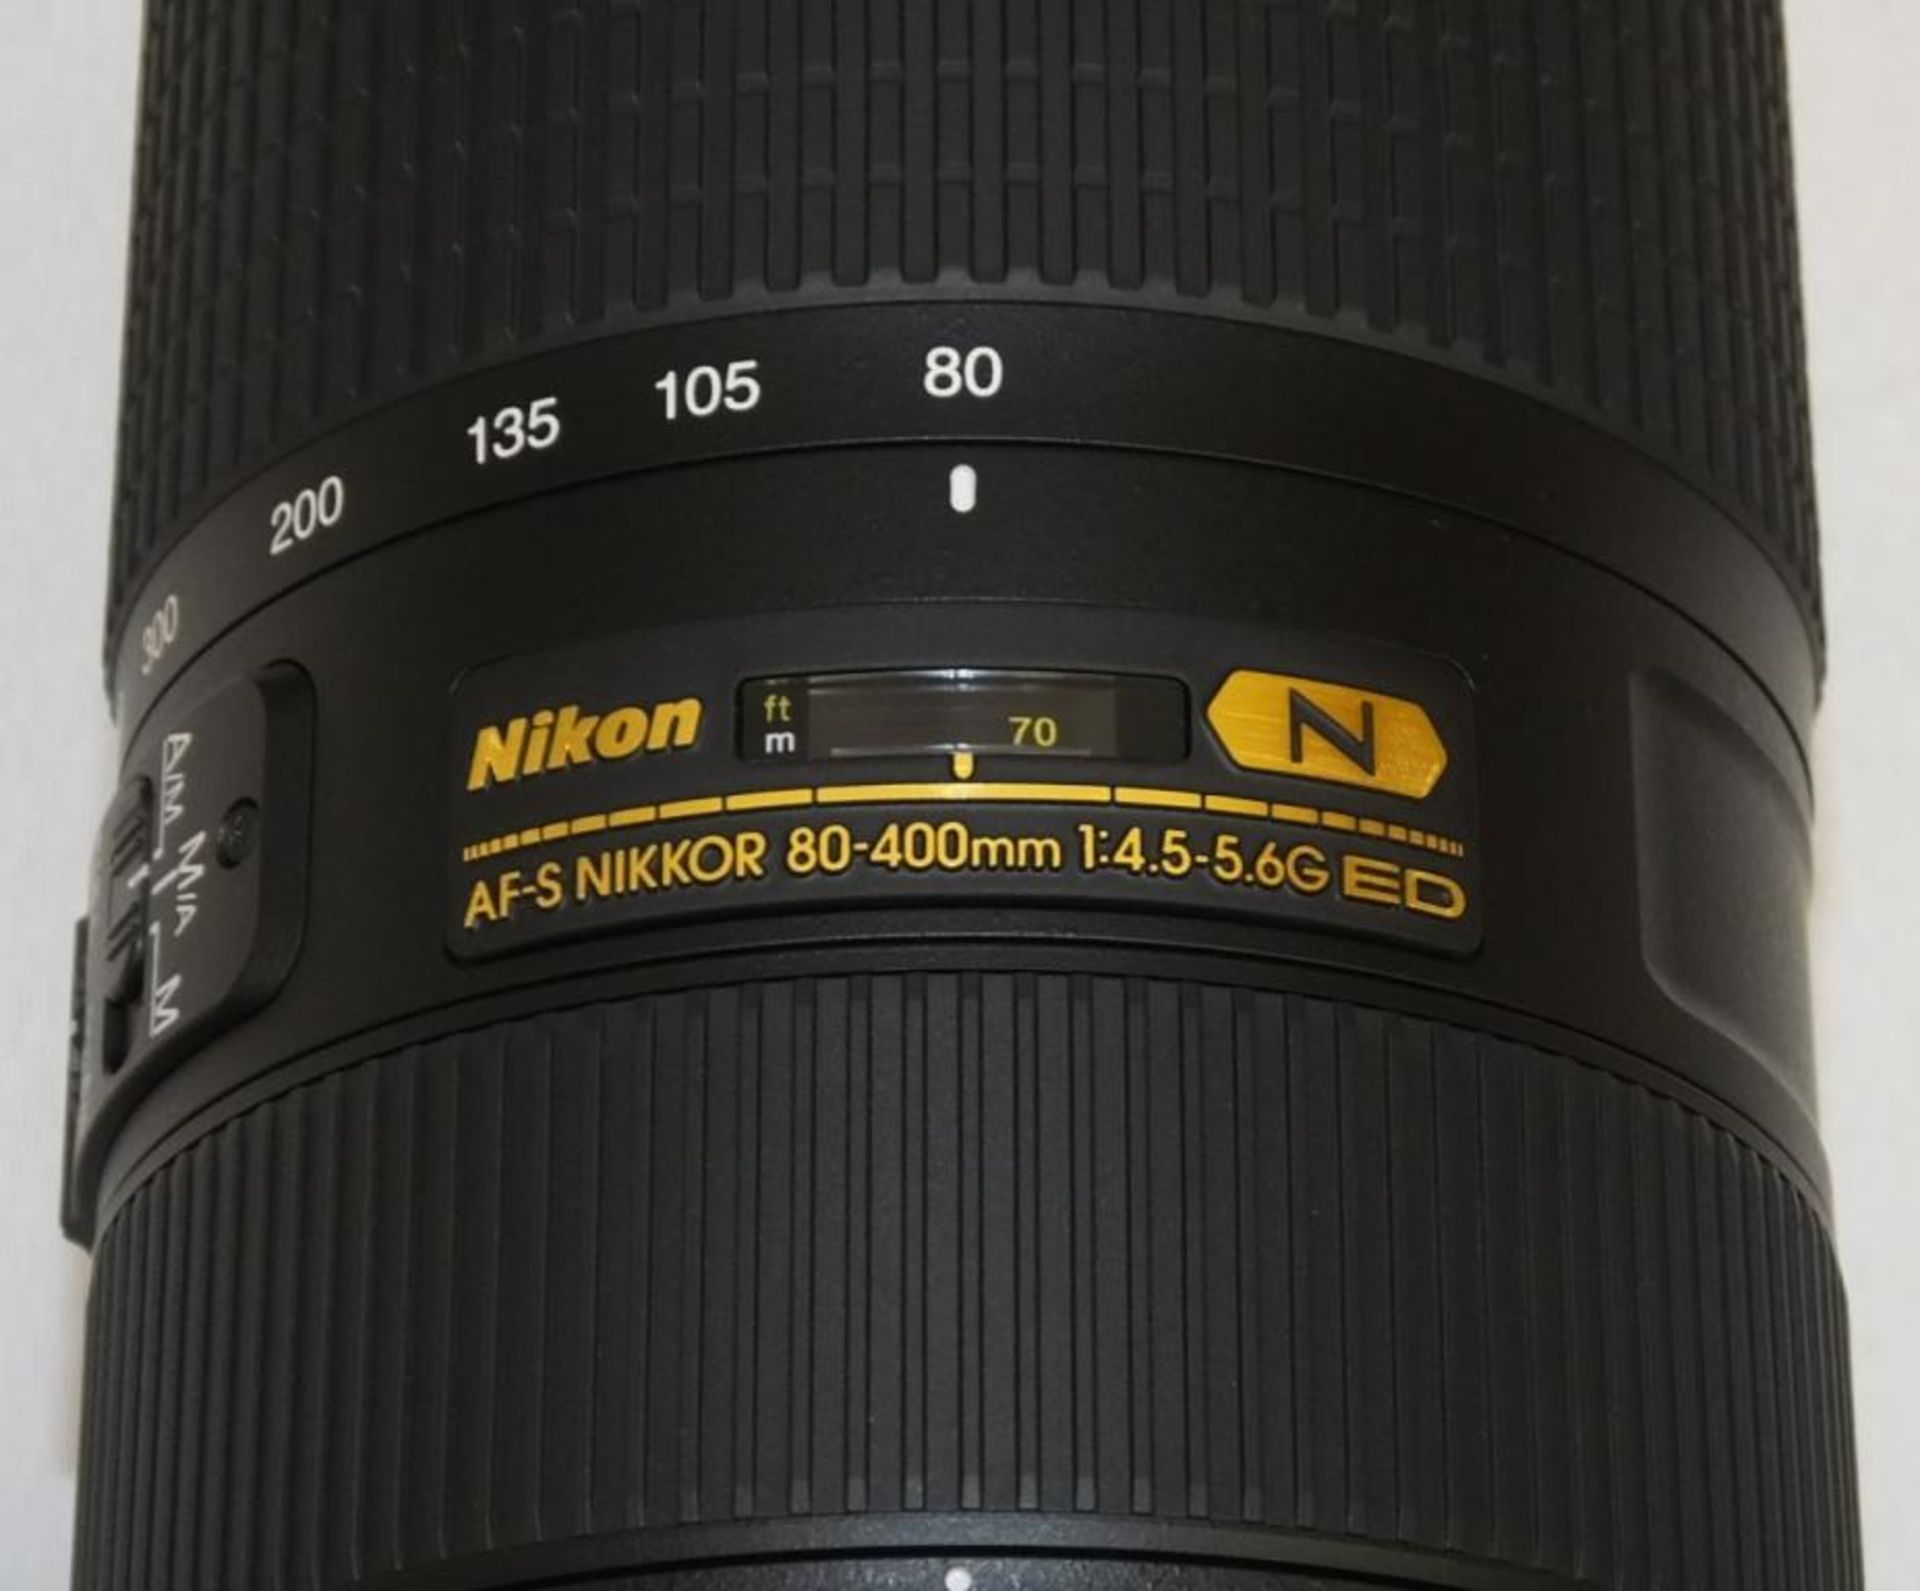 Nikon Nikkor Lens - AF-S Nikkor 80-400mm f/4.5-5.6G ED VR with Nikon HB-65 Lens Hood & CL-M2 case - Image 2 of 5